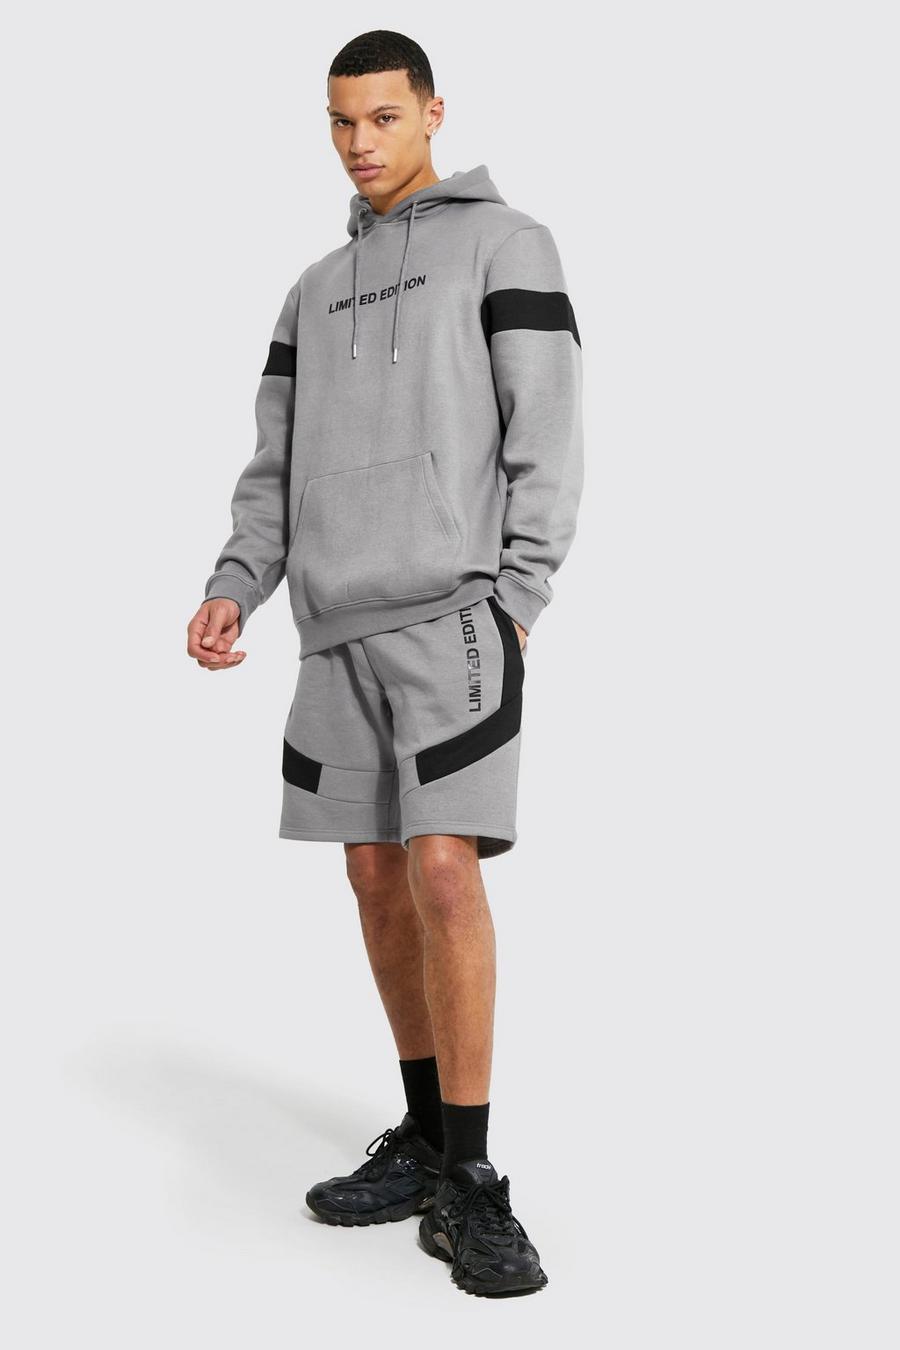 Chándal Tall Limited Edition de pantalón corto con colores en bloque, Dark grey image number 1